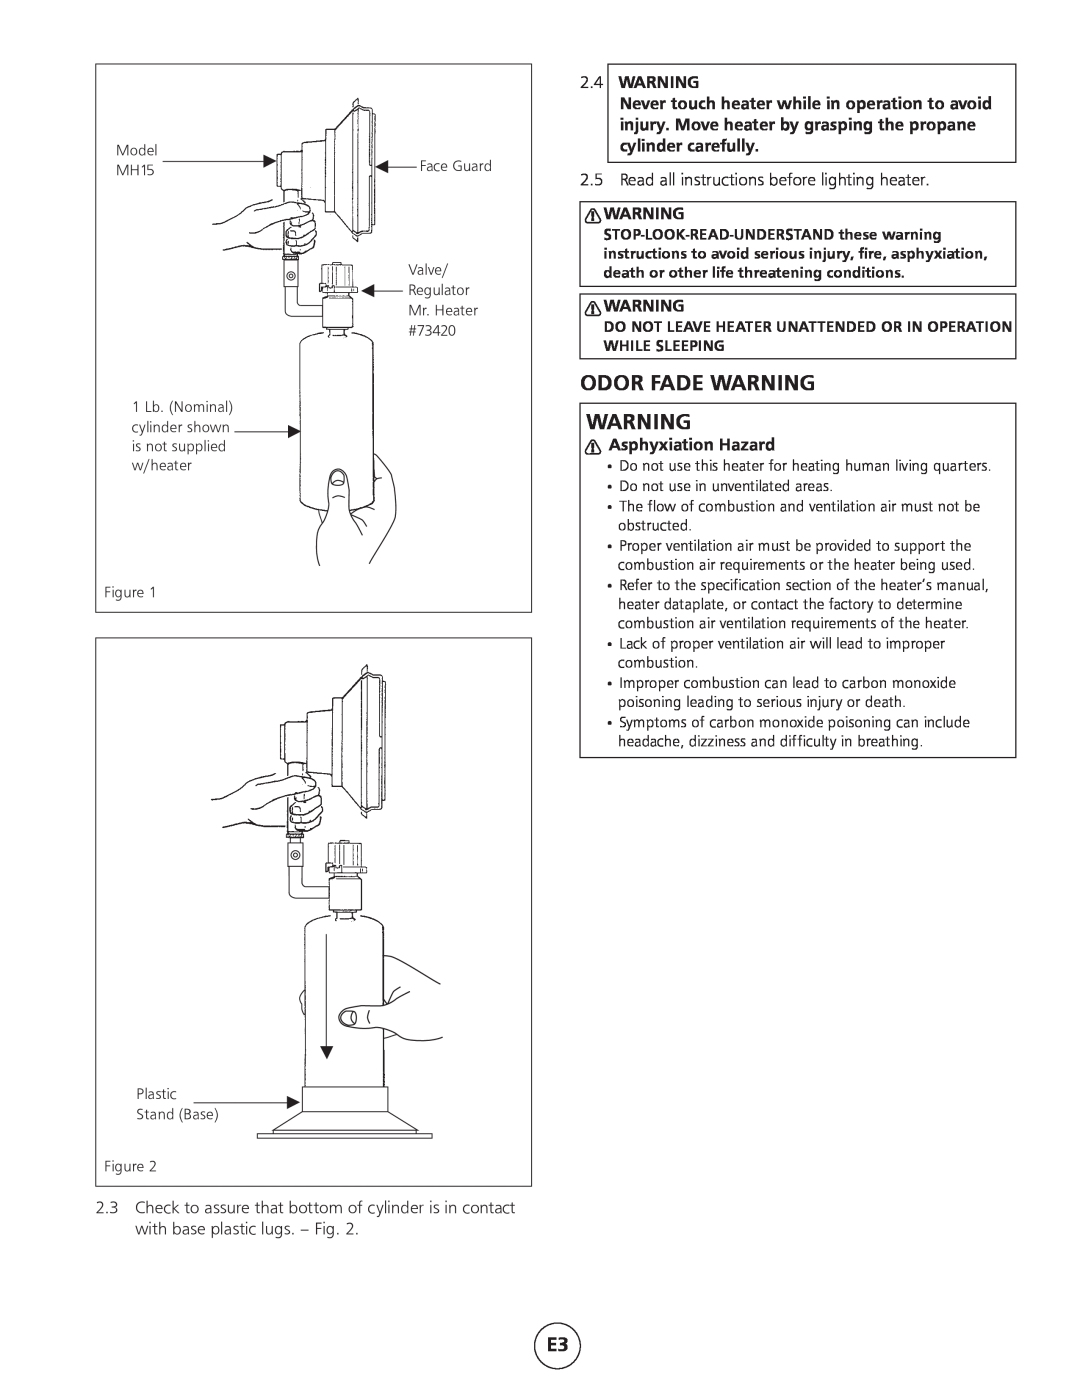 Mr. Heater MH15 operating instructions Odor Fade Warning, General Information, 2.4WARNING, Asphyxiation Hazard 